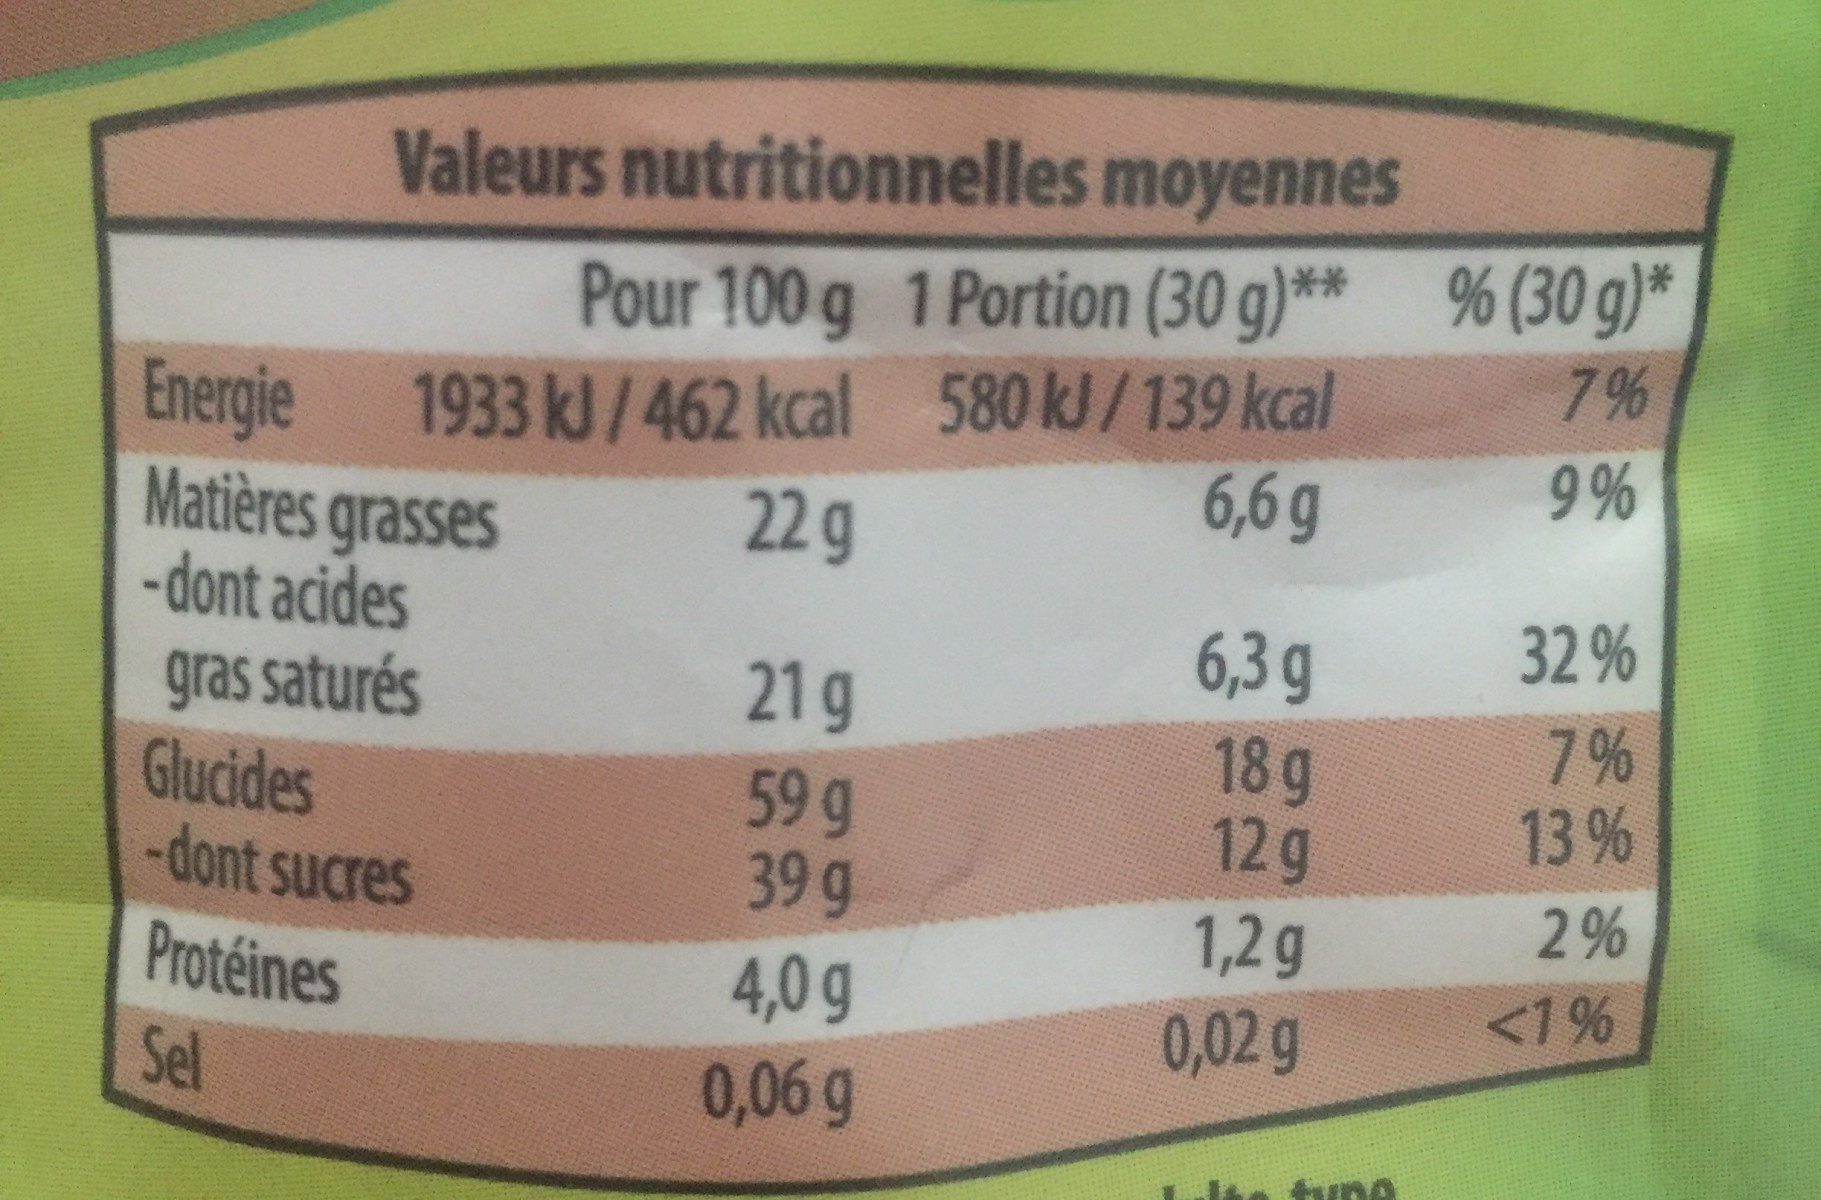 Hawaï Mélange - Morceaux de mangues déshydratées, sucrées - Nutrition facts - fr